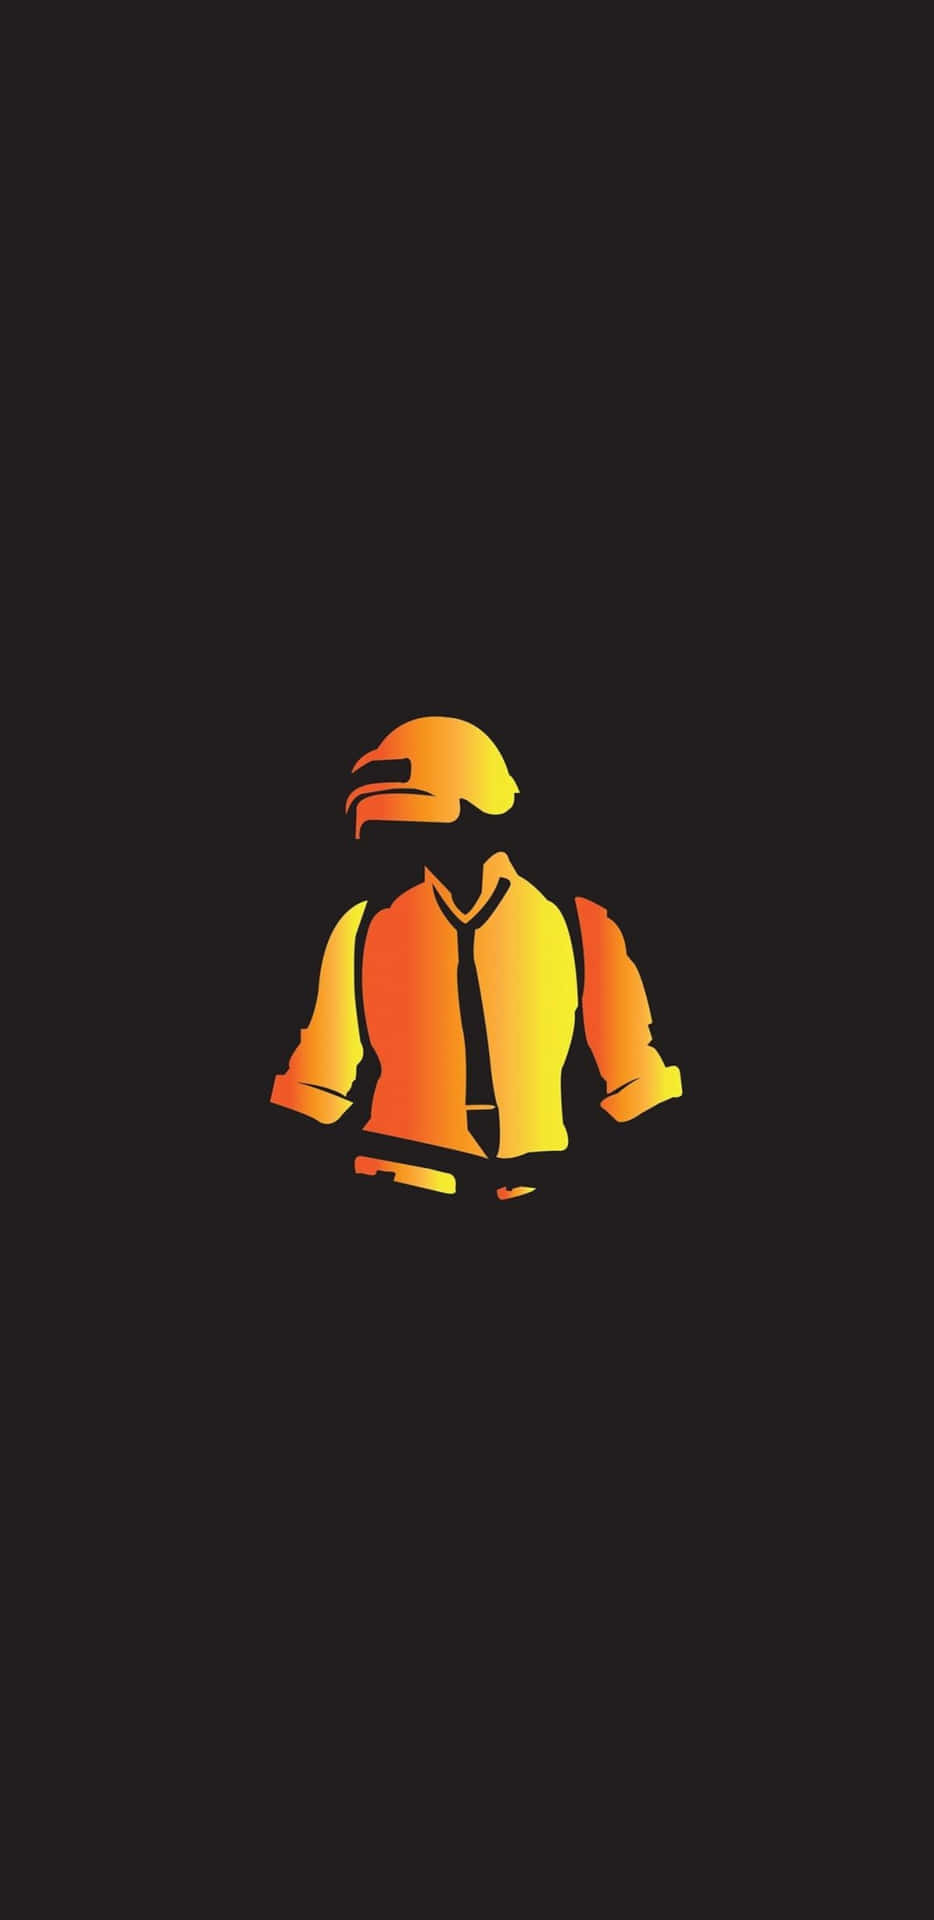 Pixel3xl Hintergrundbild Von Playerunknown's Battlegrounds Mit Der Silhouette Eines Mannes In Orange.